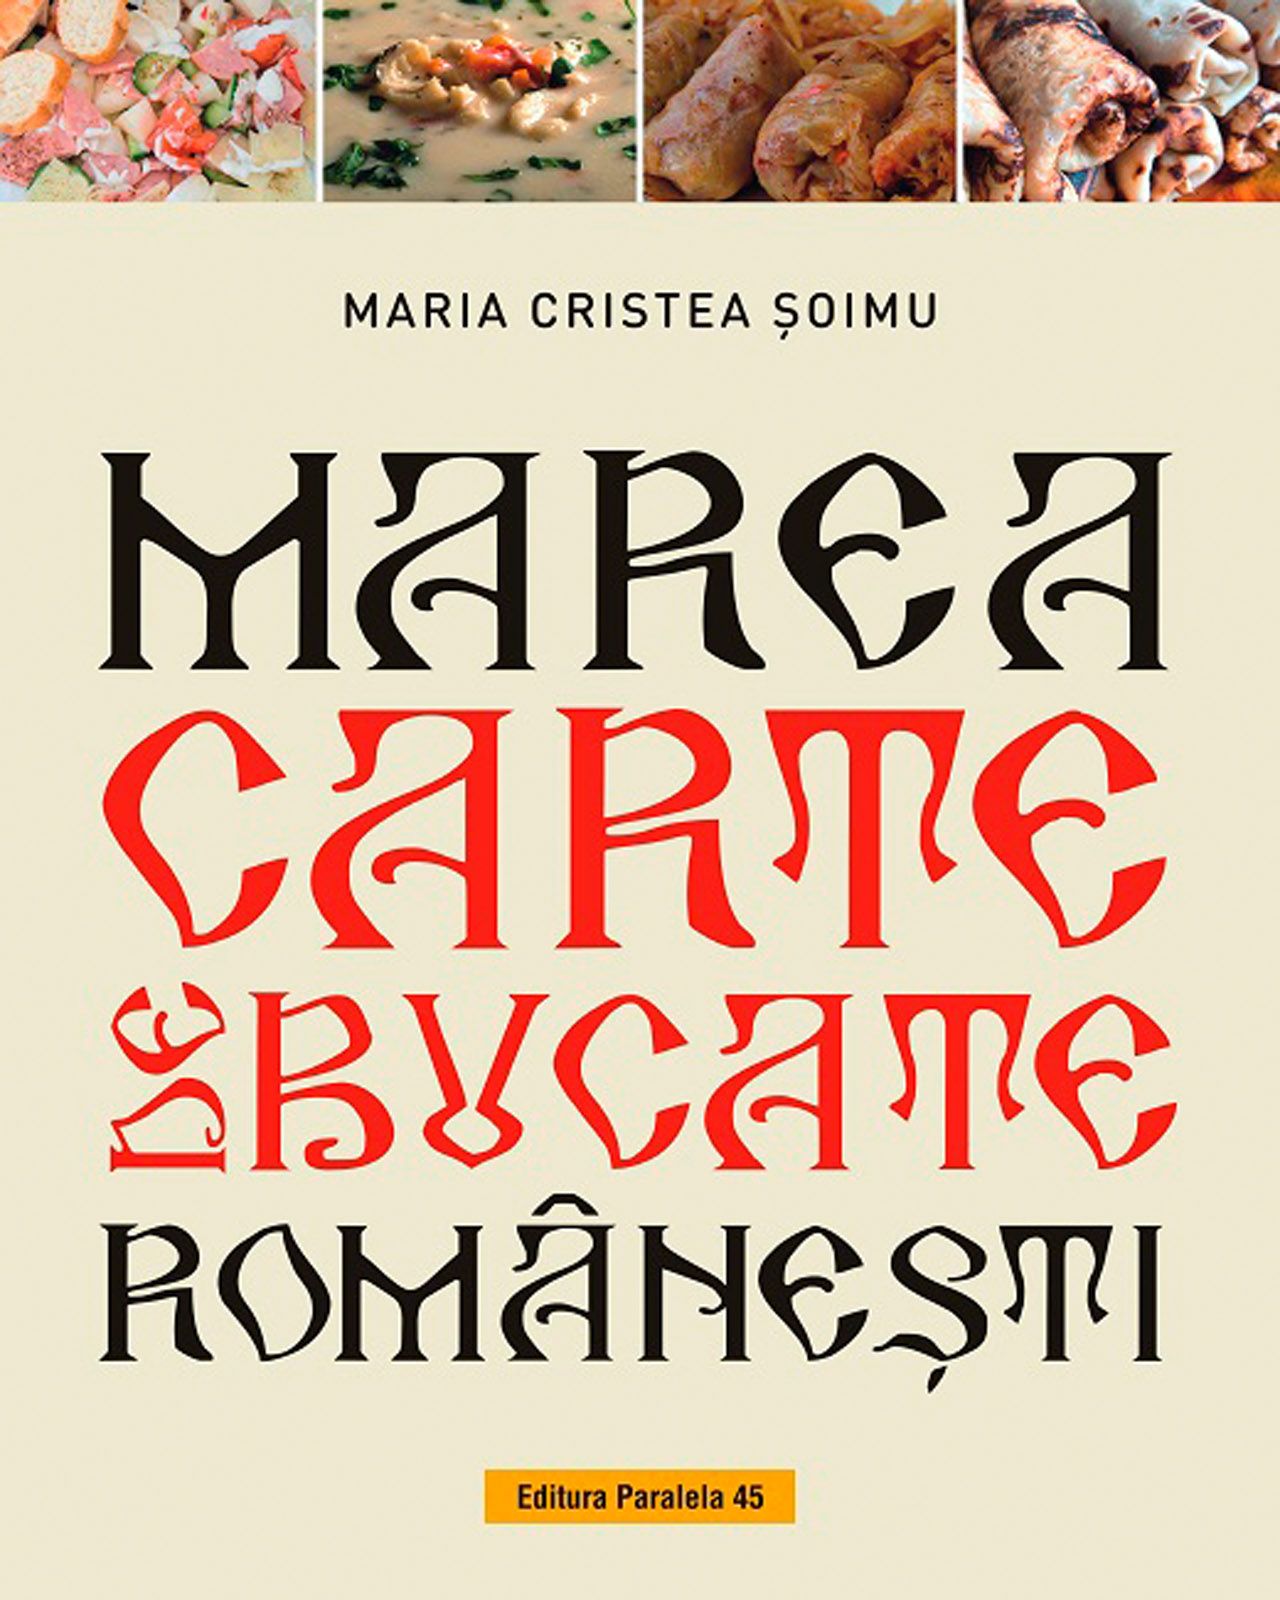 Nine Thanks Mechanics Marea carte de bucate romanesti. 1000+ retete traditionale & moderne, Maria  Cristea Soimu